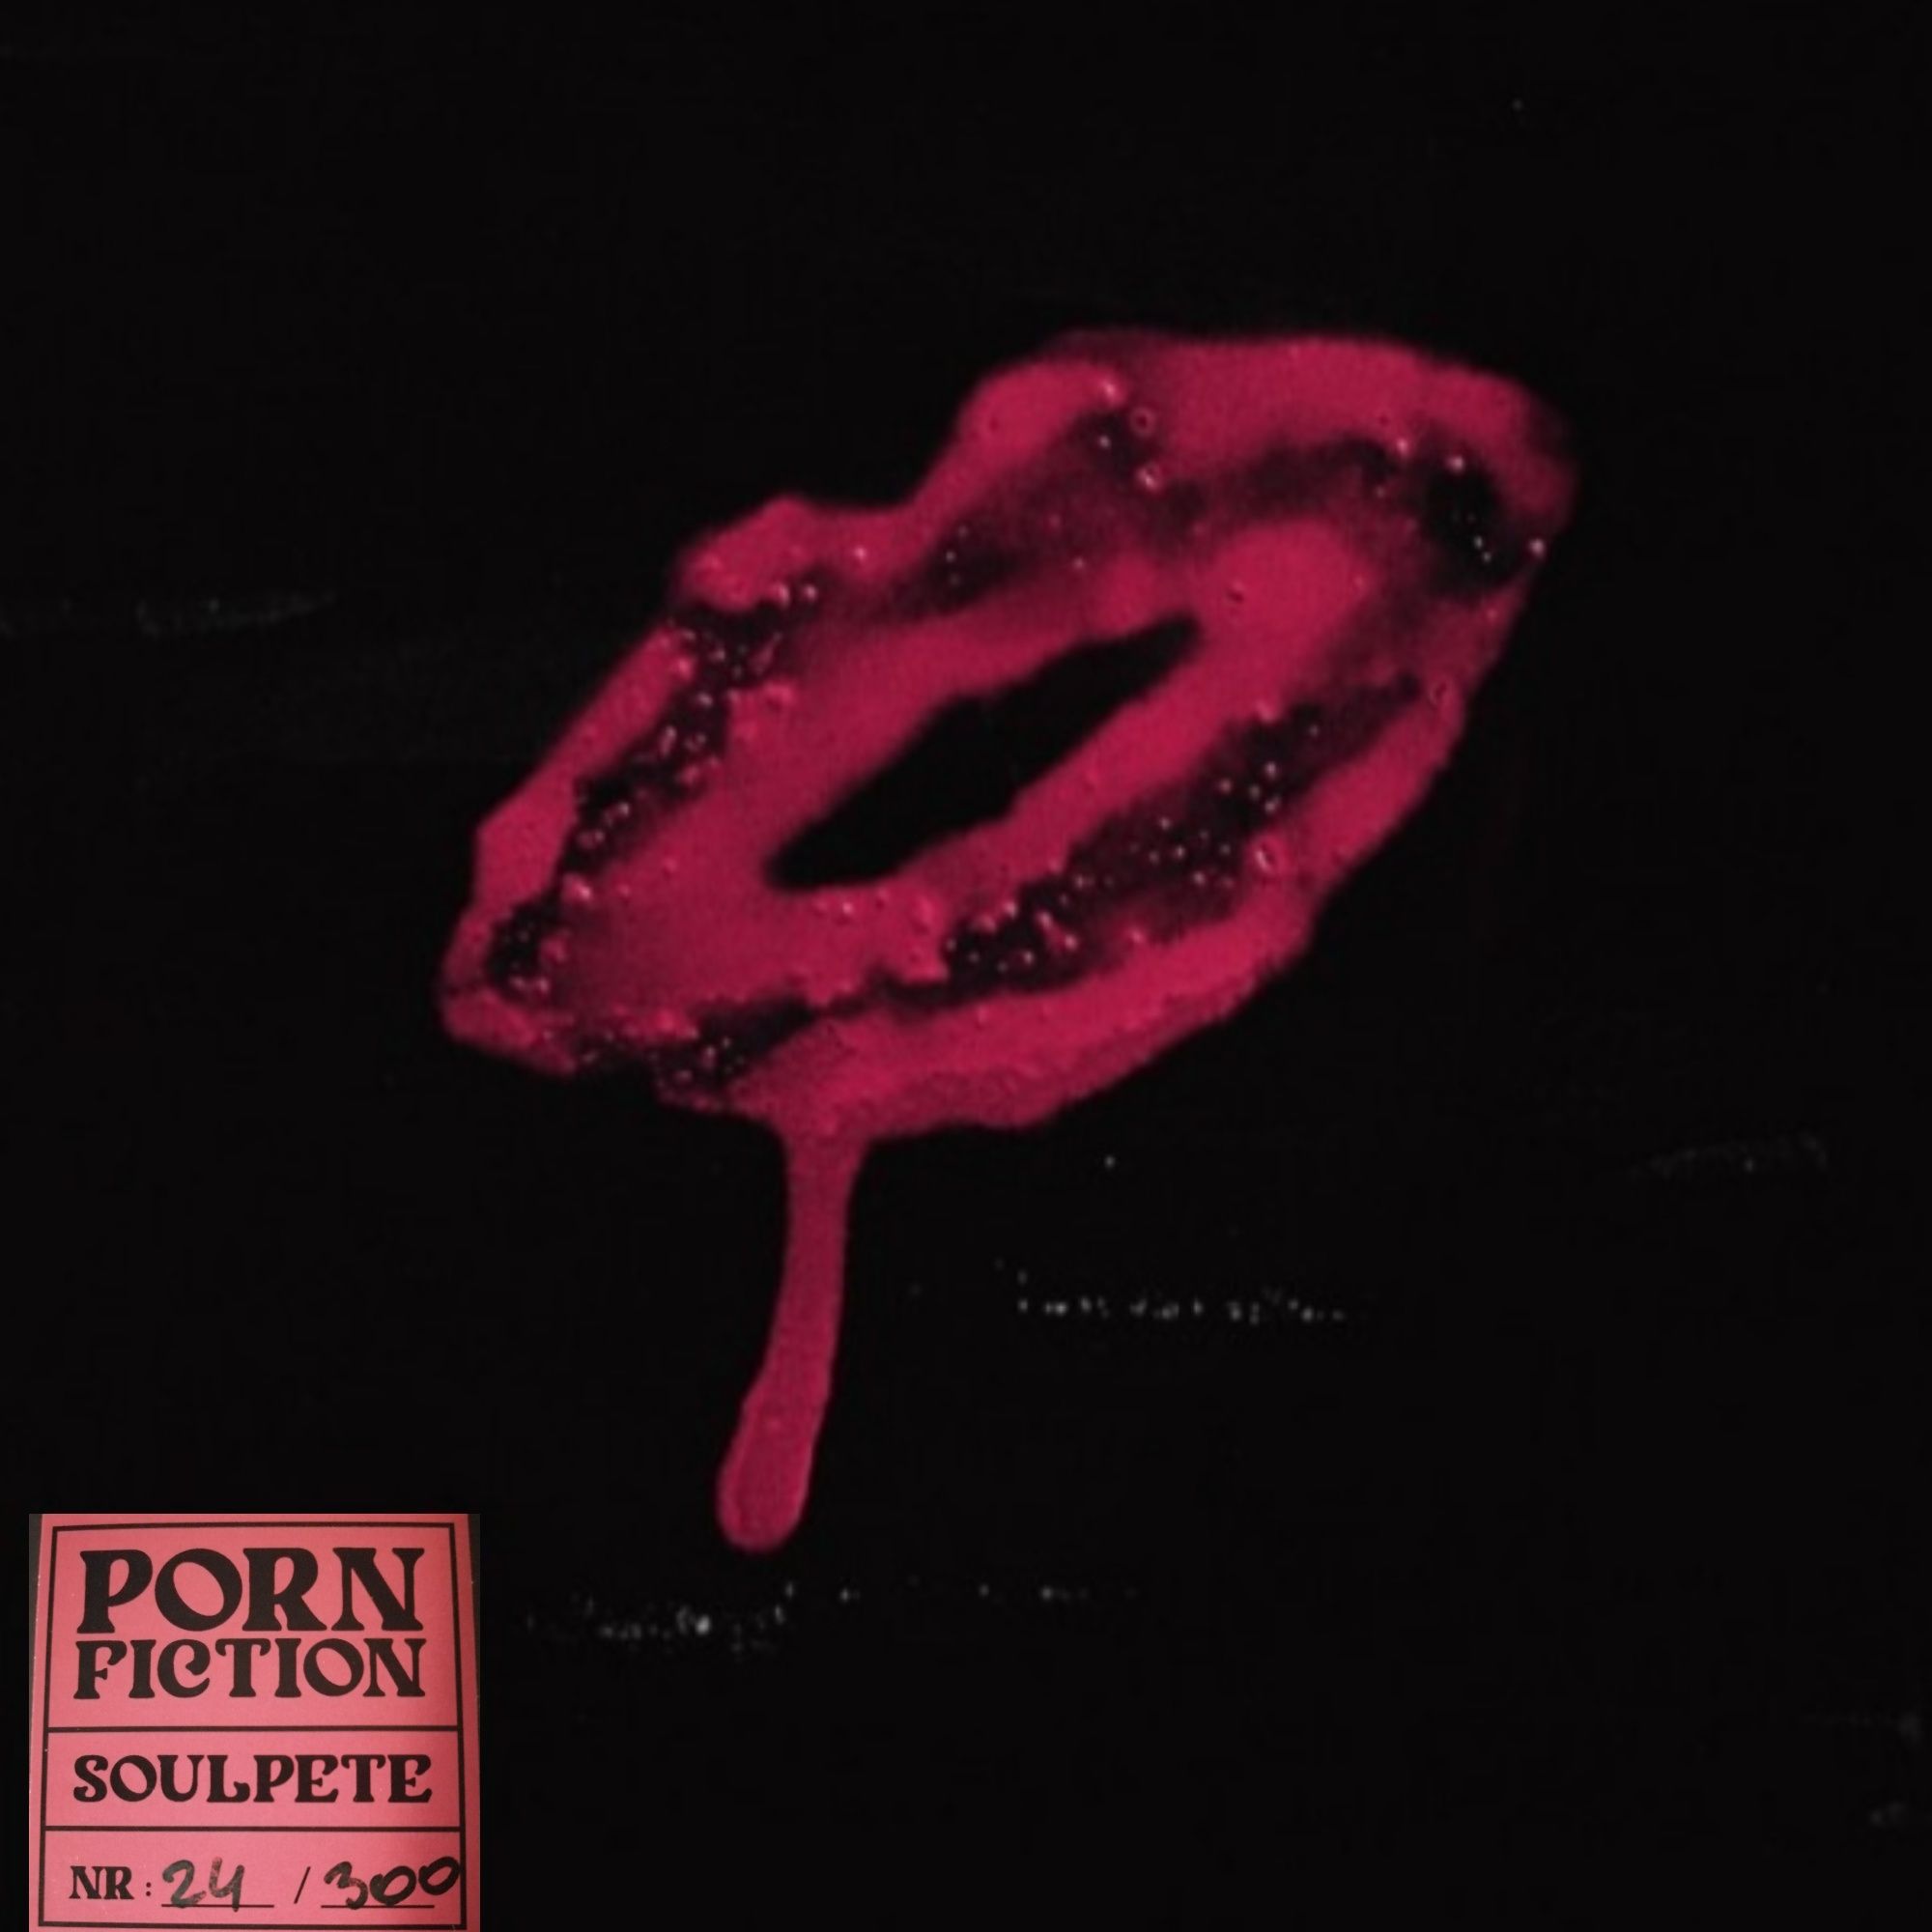 Soulpete - Porn Fiction LP nowość